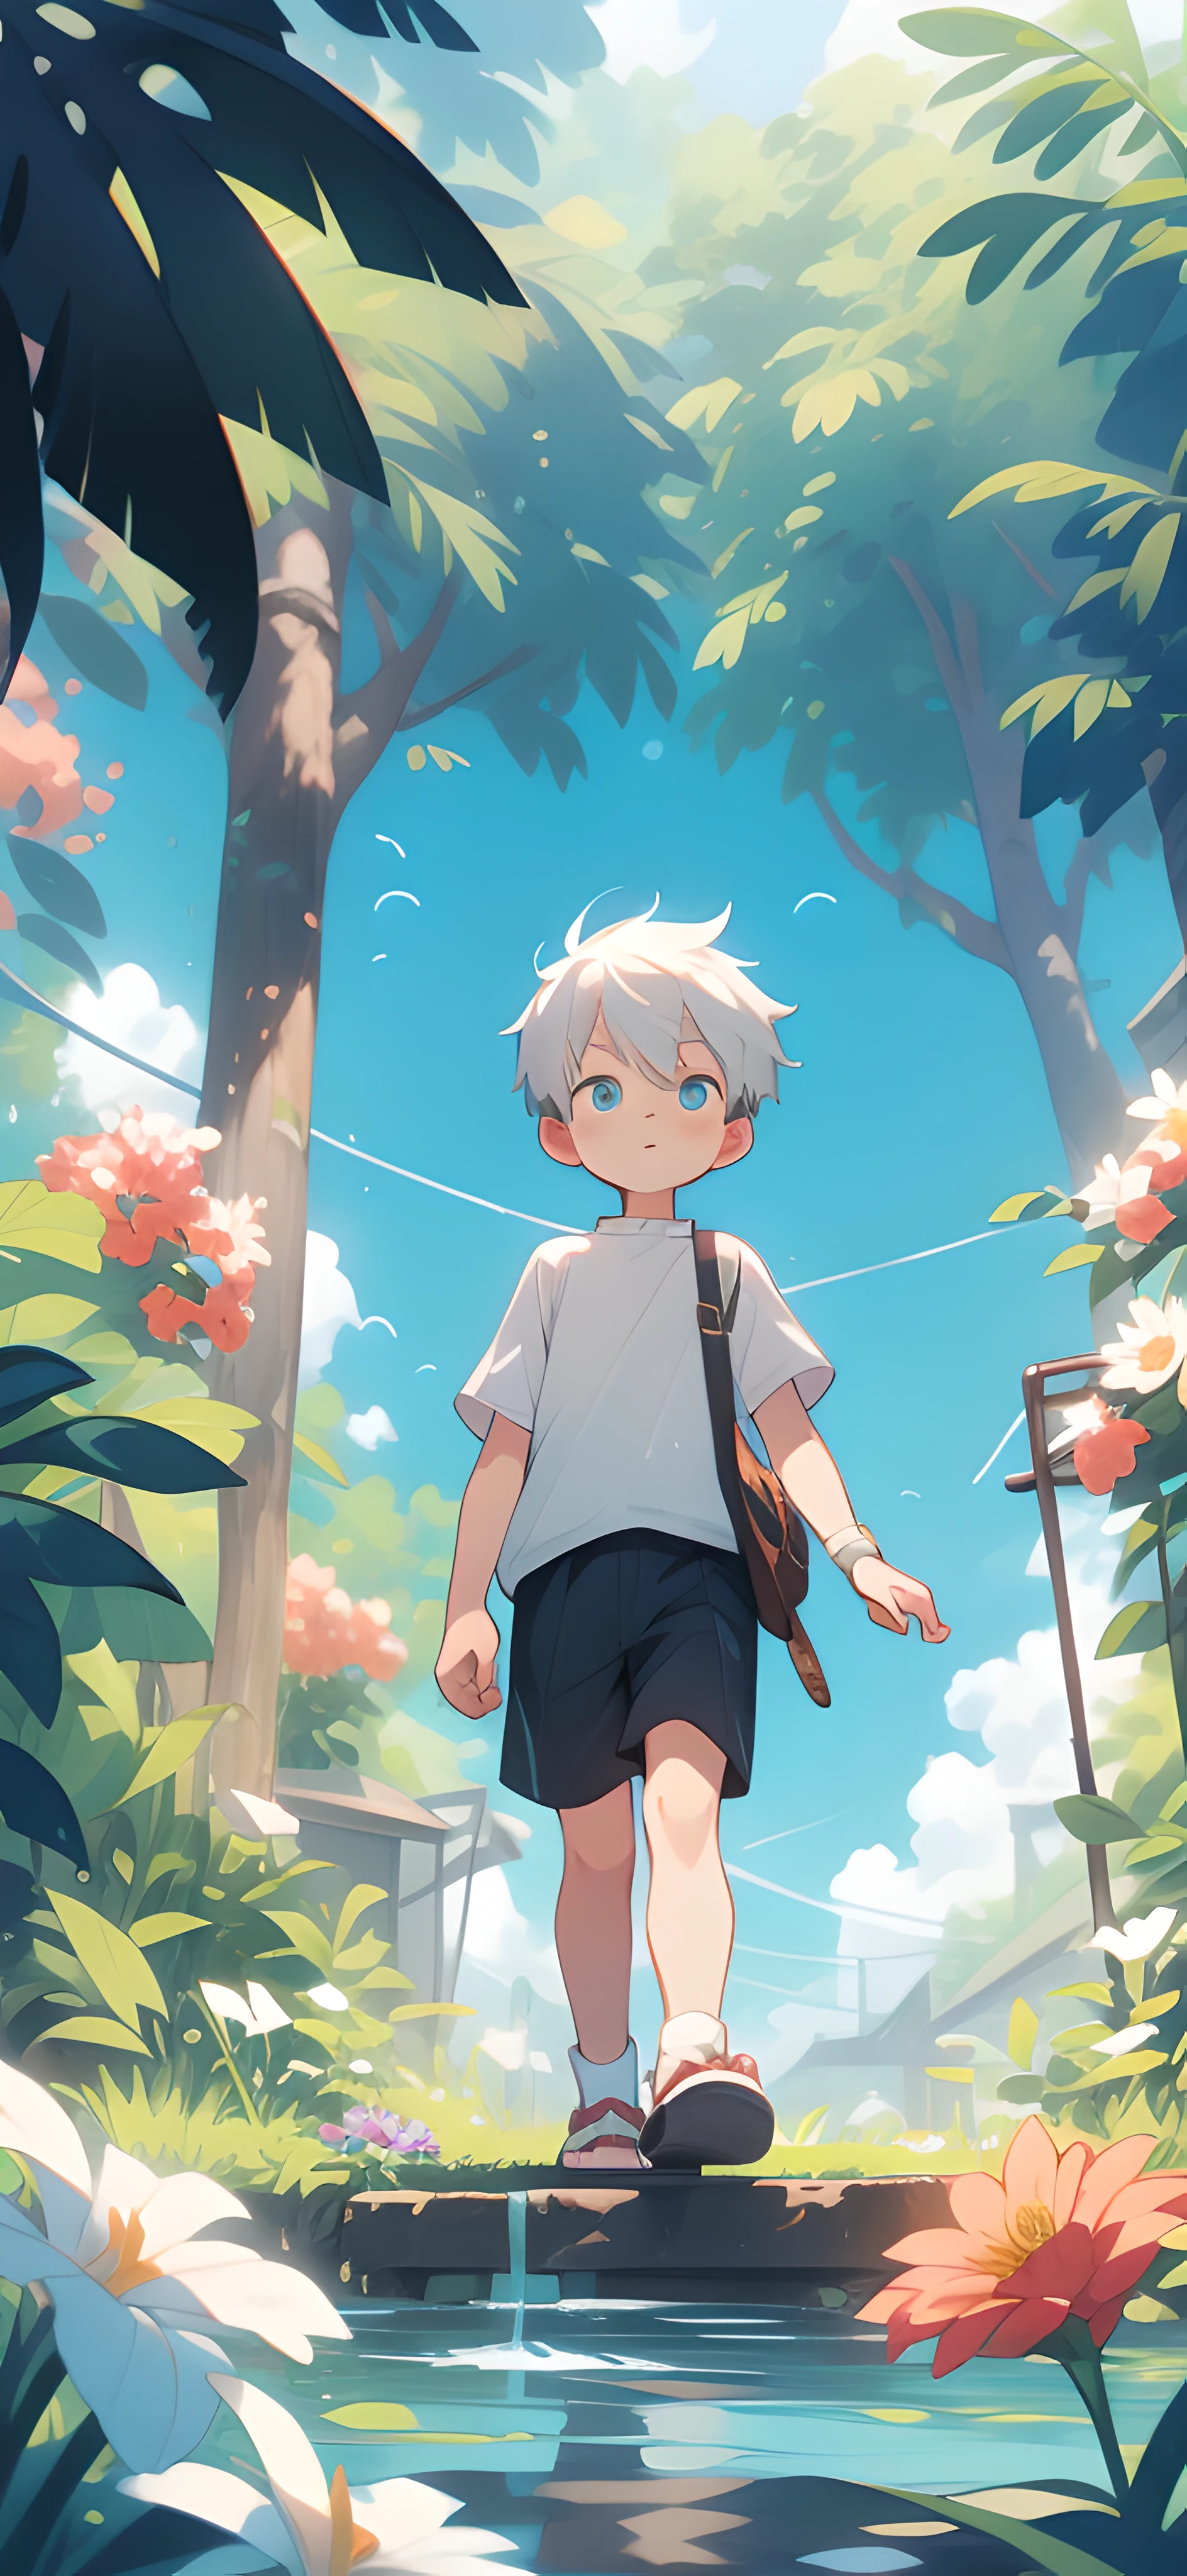 La pequeña Shota, de pelo blanco y calcetines blancos, caminando en un mar de flores.